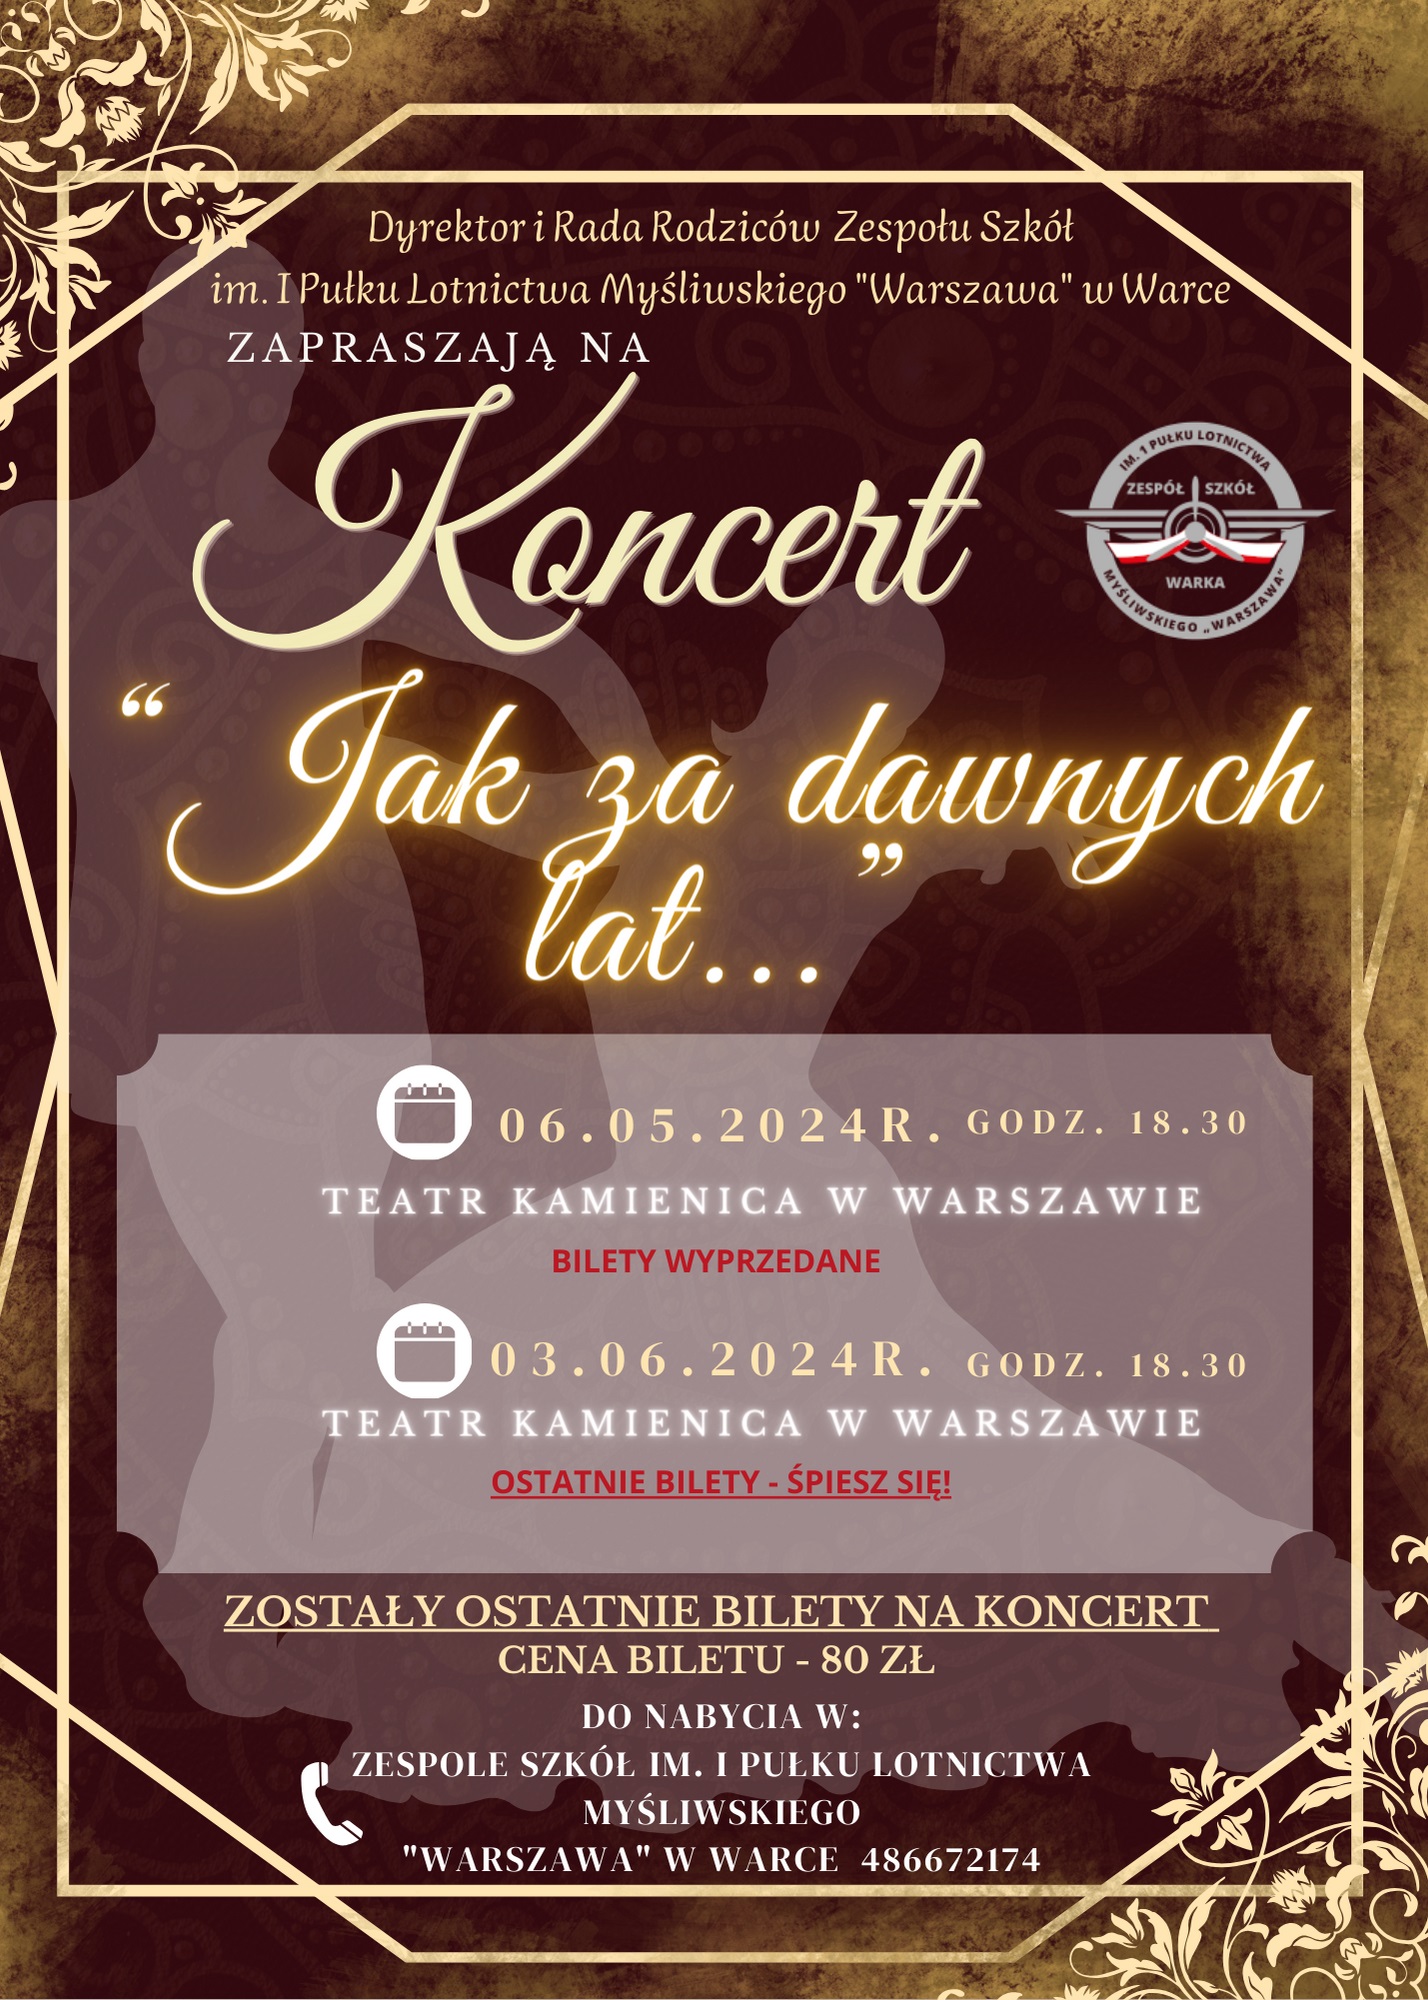 Ikona do artykułu: Koncerty "Jak za dawnych lat..." w Teatrze Kamienica w Warszawie